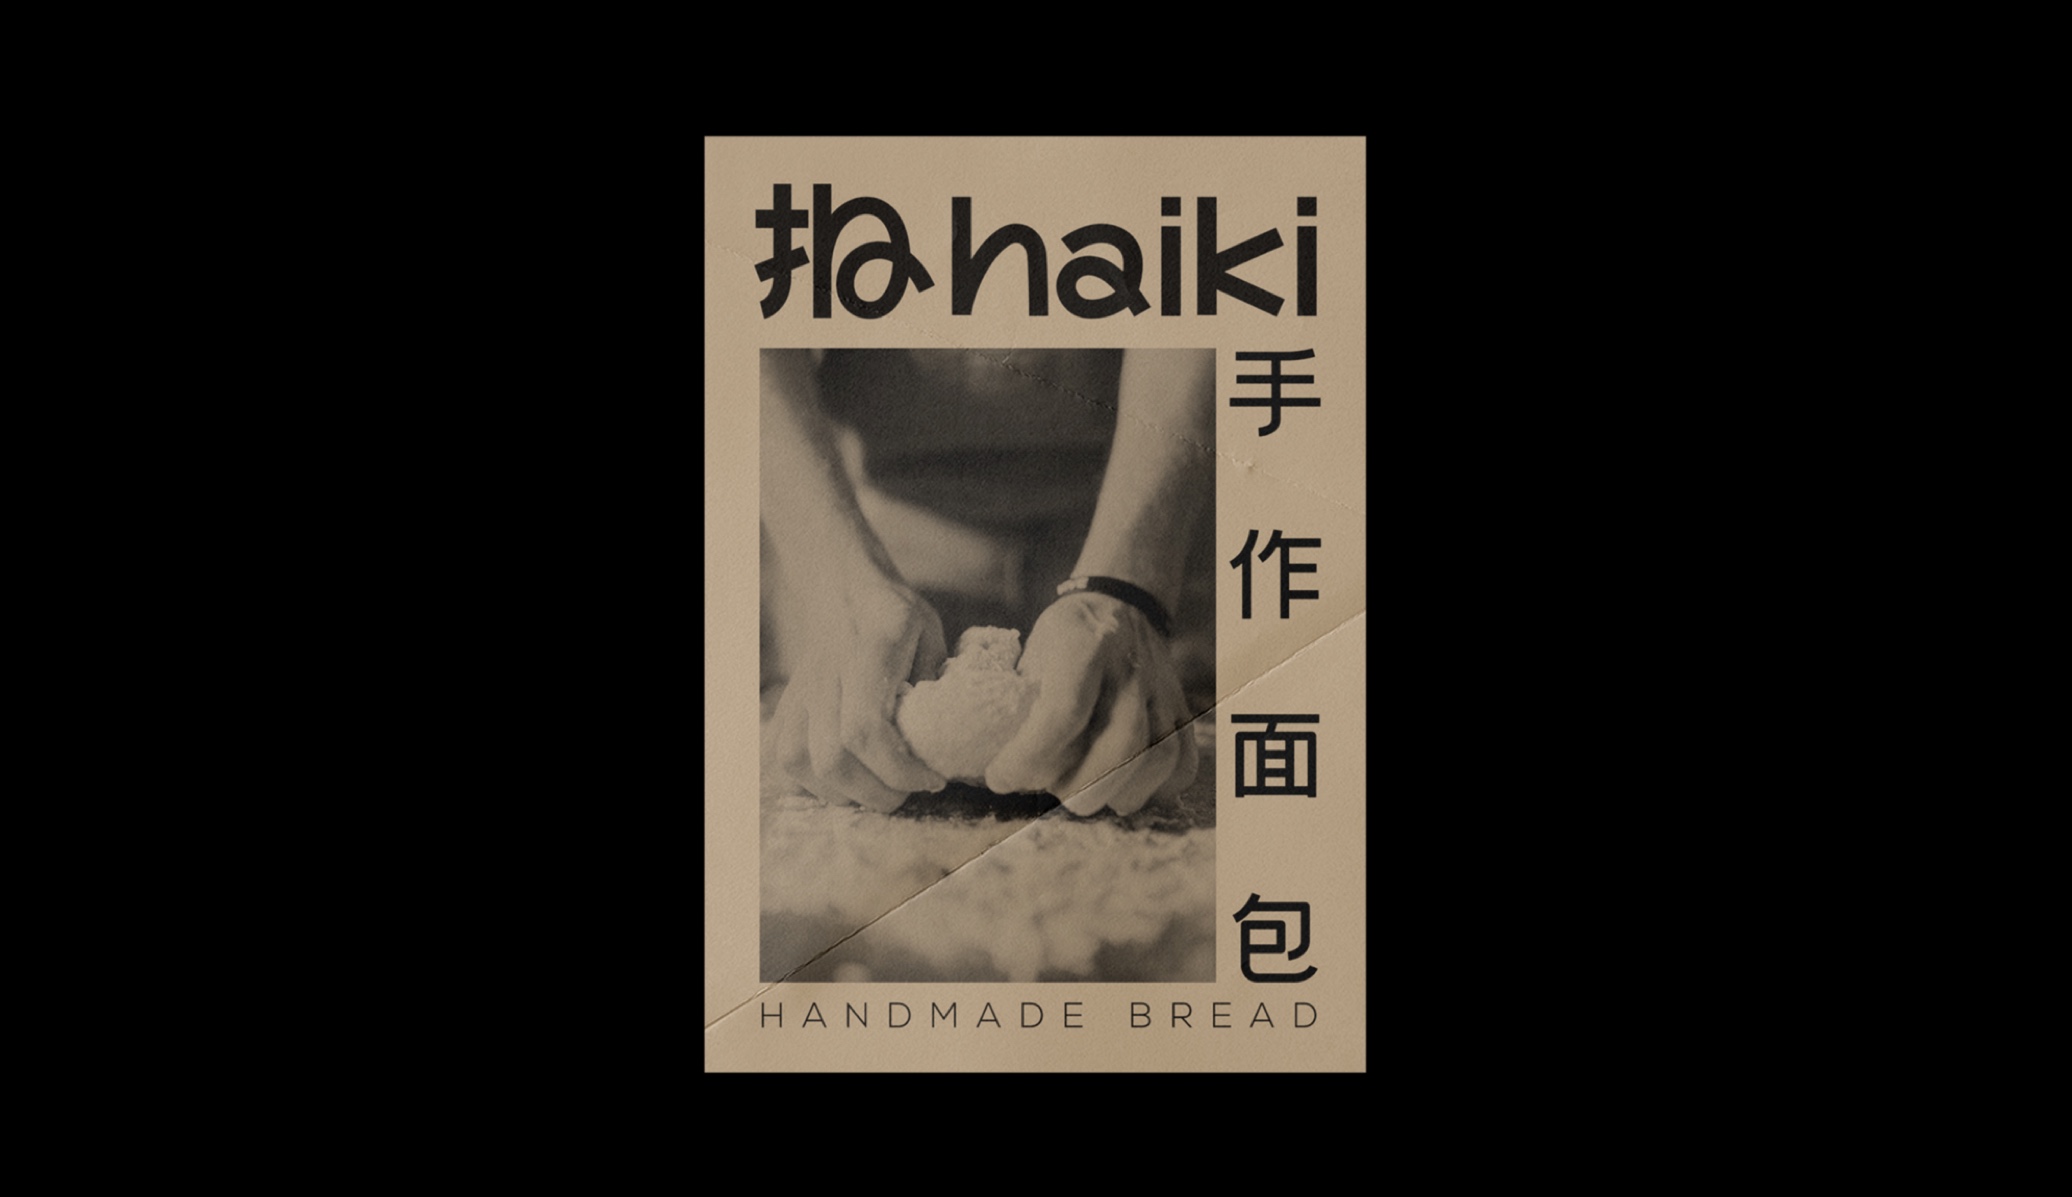 【细节设计】日系面包haiki烘培品牌LOGO设计&VI